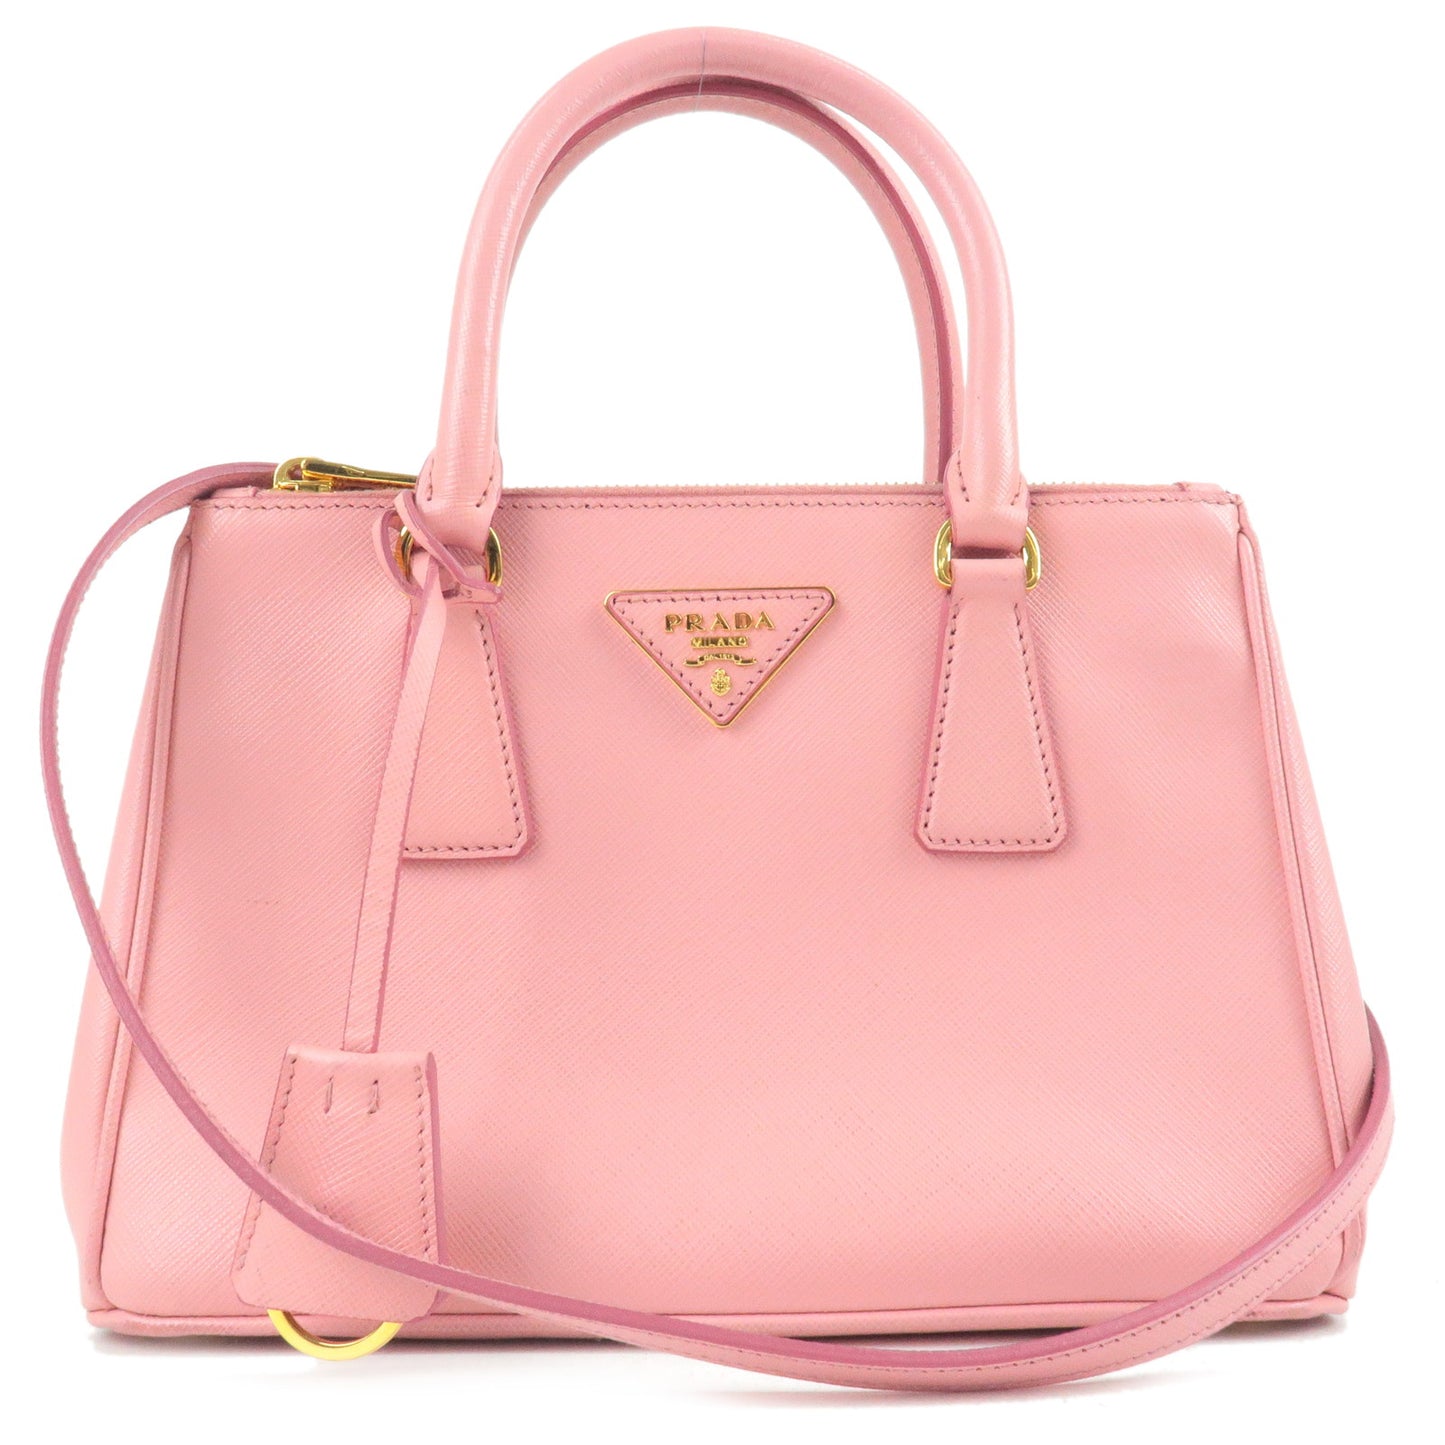 PRADA-Leather-2Way-Hand-Bag-Shoulder-Bag-Pink